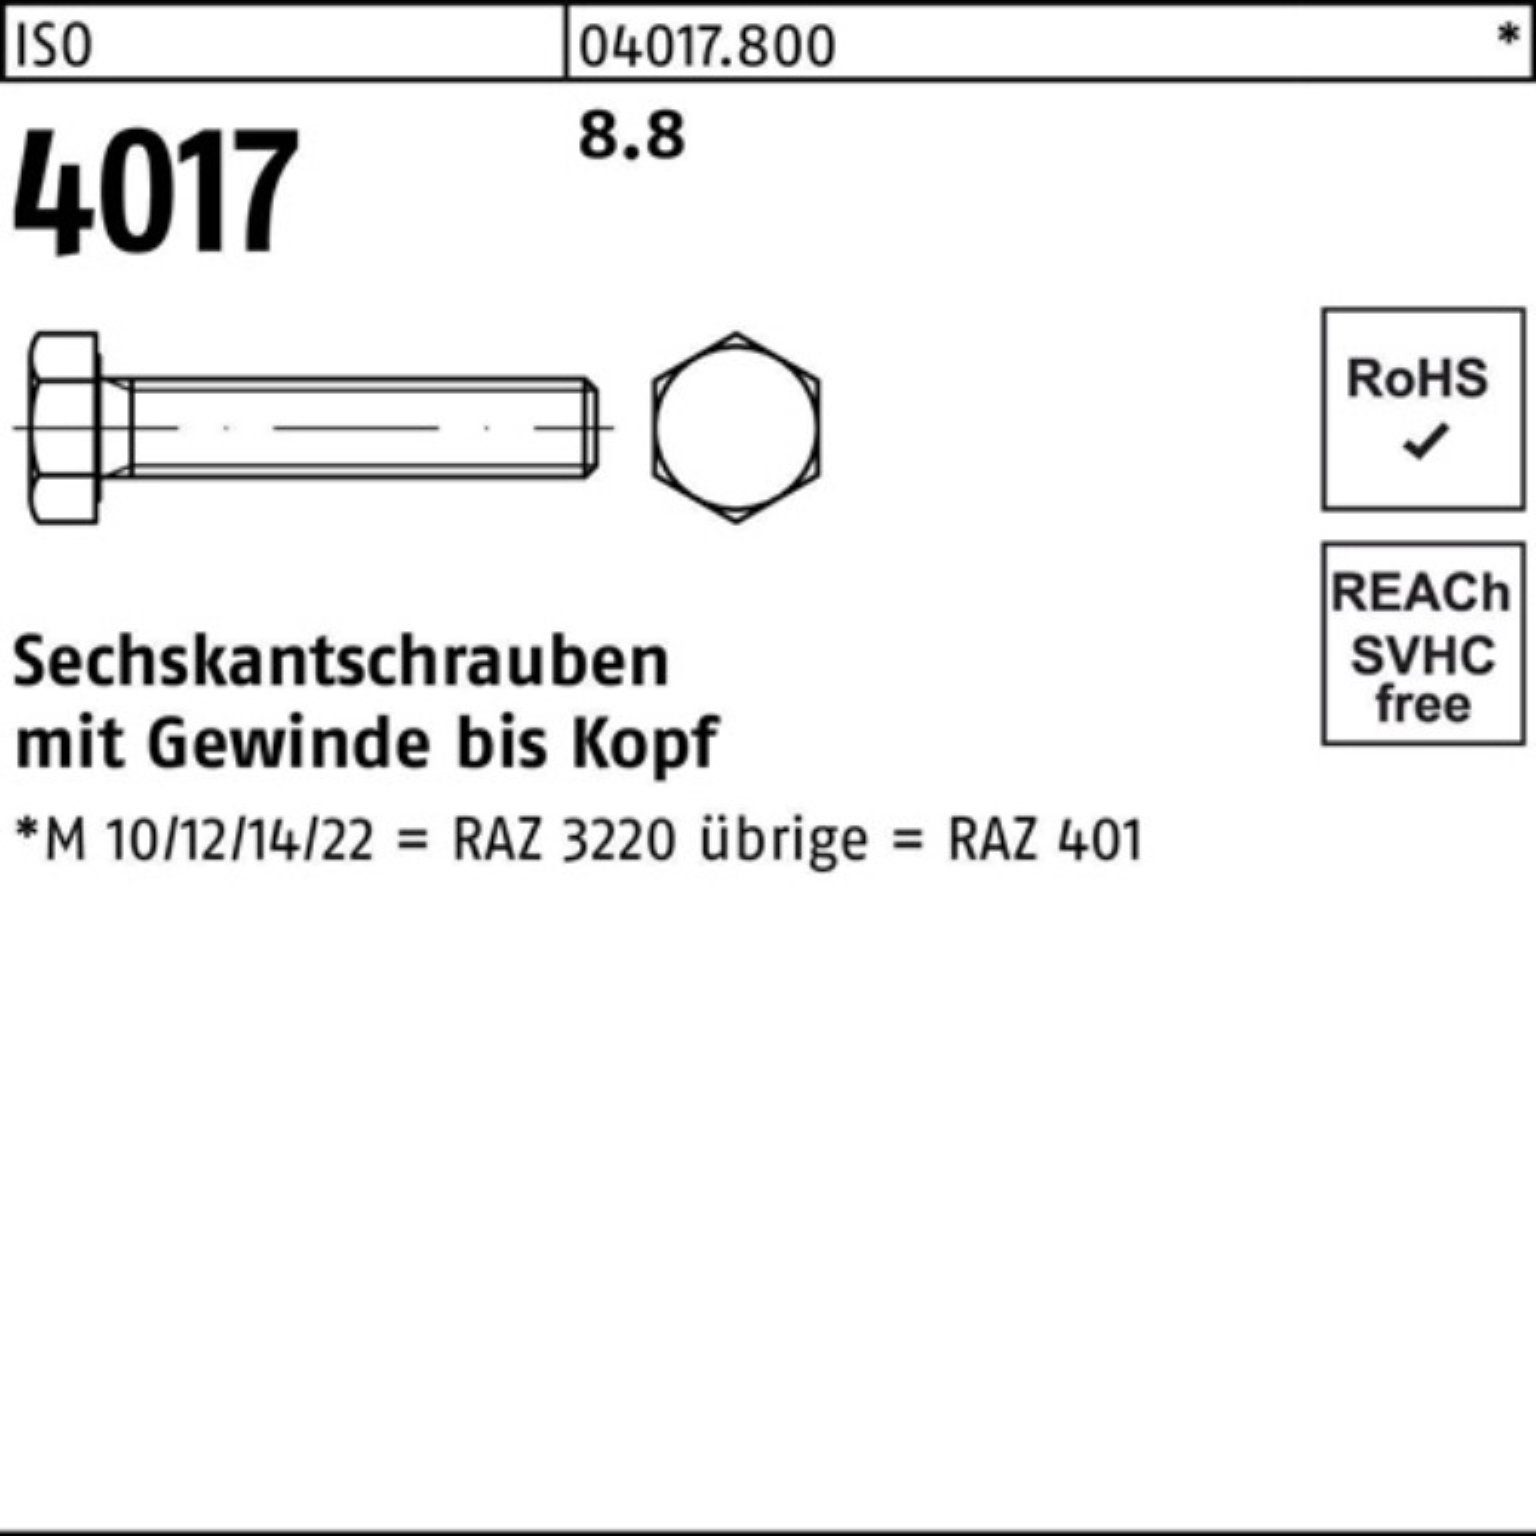 Bufab Sechskantschraube Stück 4017 ISO 1 Sechskantschraube 100er 8.8 Pack VG ISO 4017 85 M30x